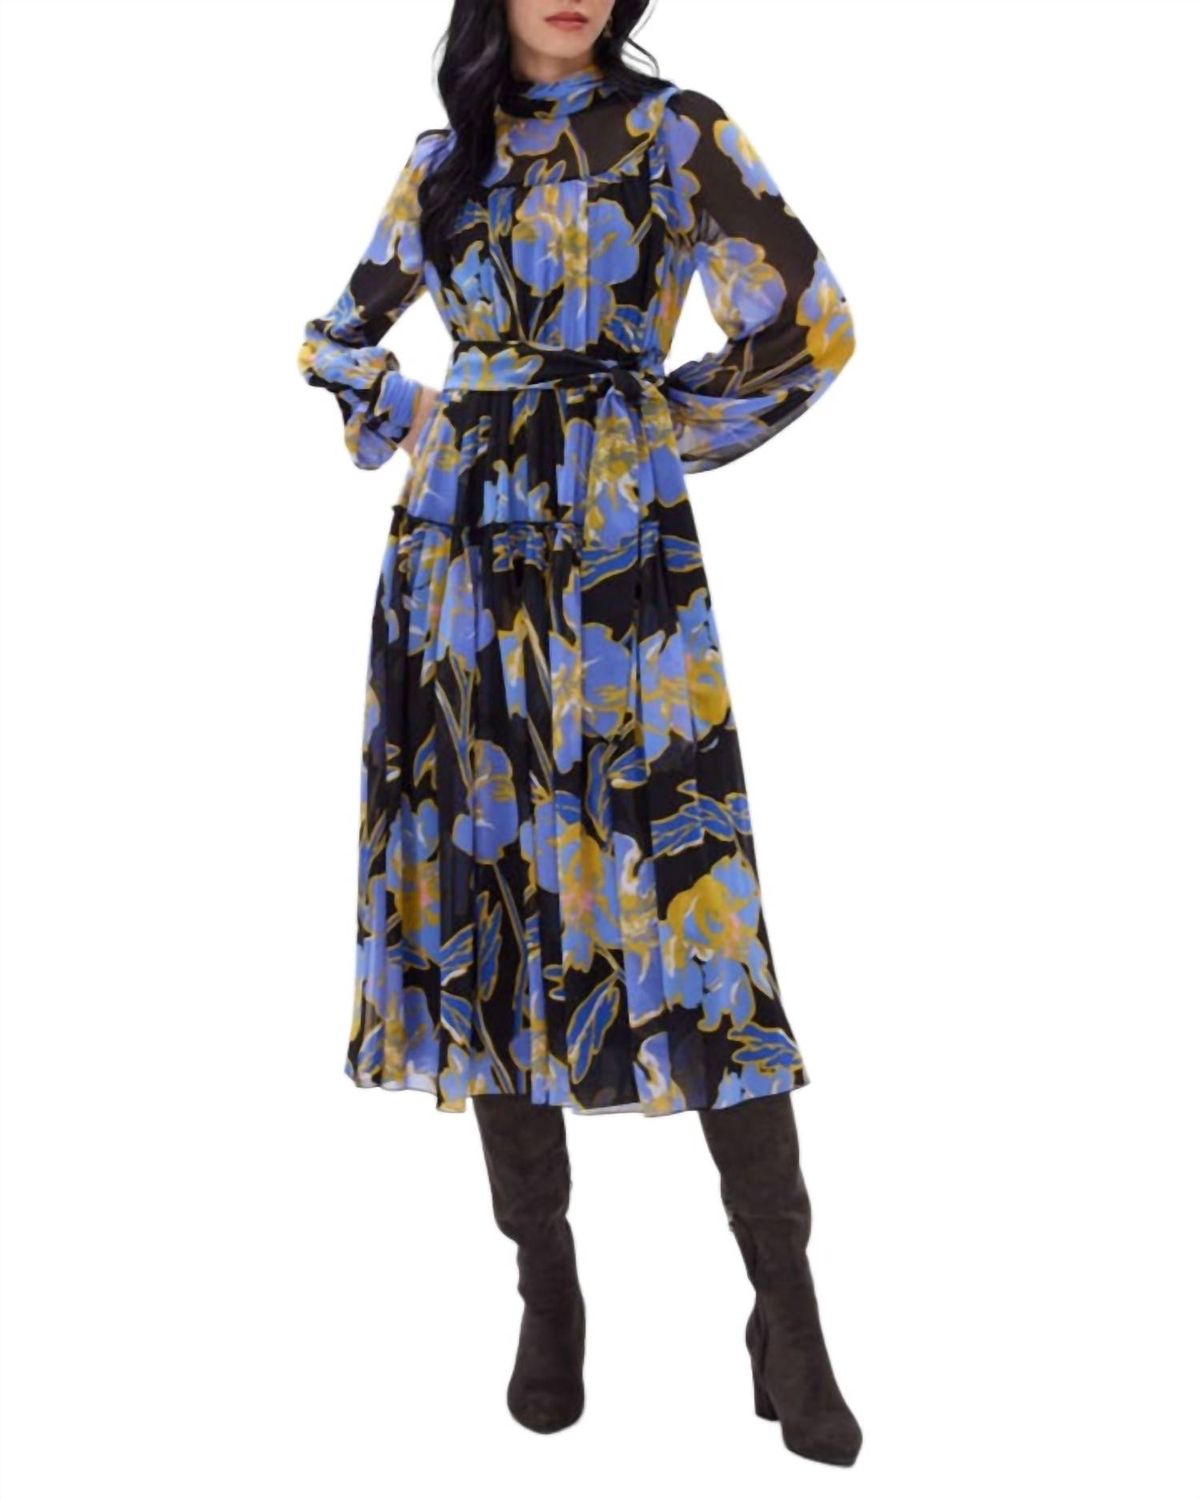 Style 1-788479269-1901 Diane von Furstenberg Size 6 High Neck Floral Blue Cocktail Dress on Queenly